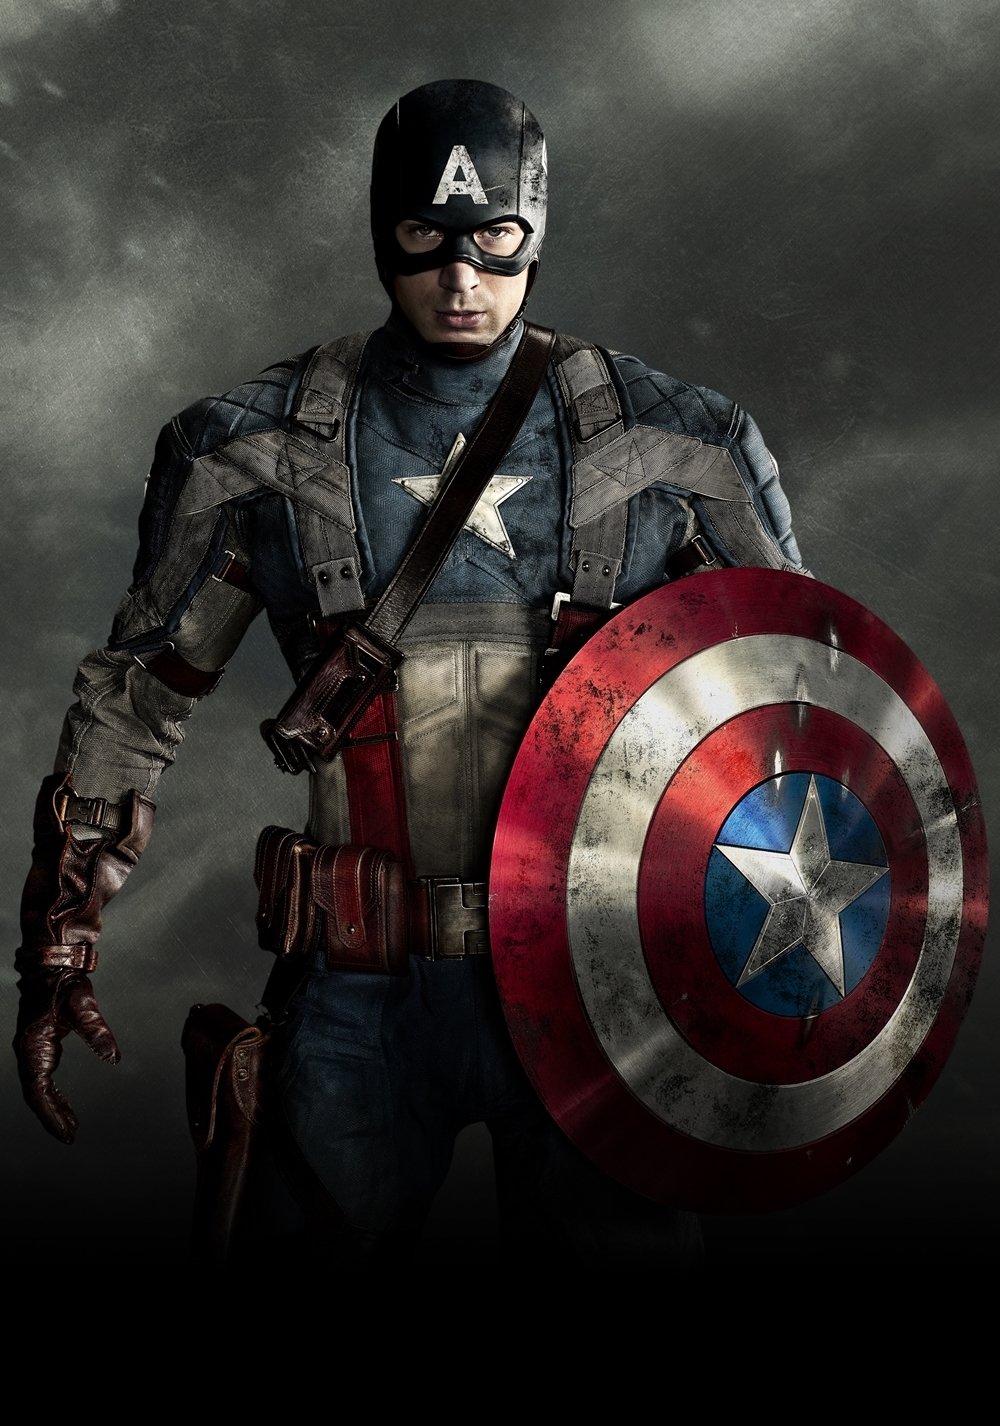 Captain america 1 full movie download in telugu